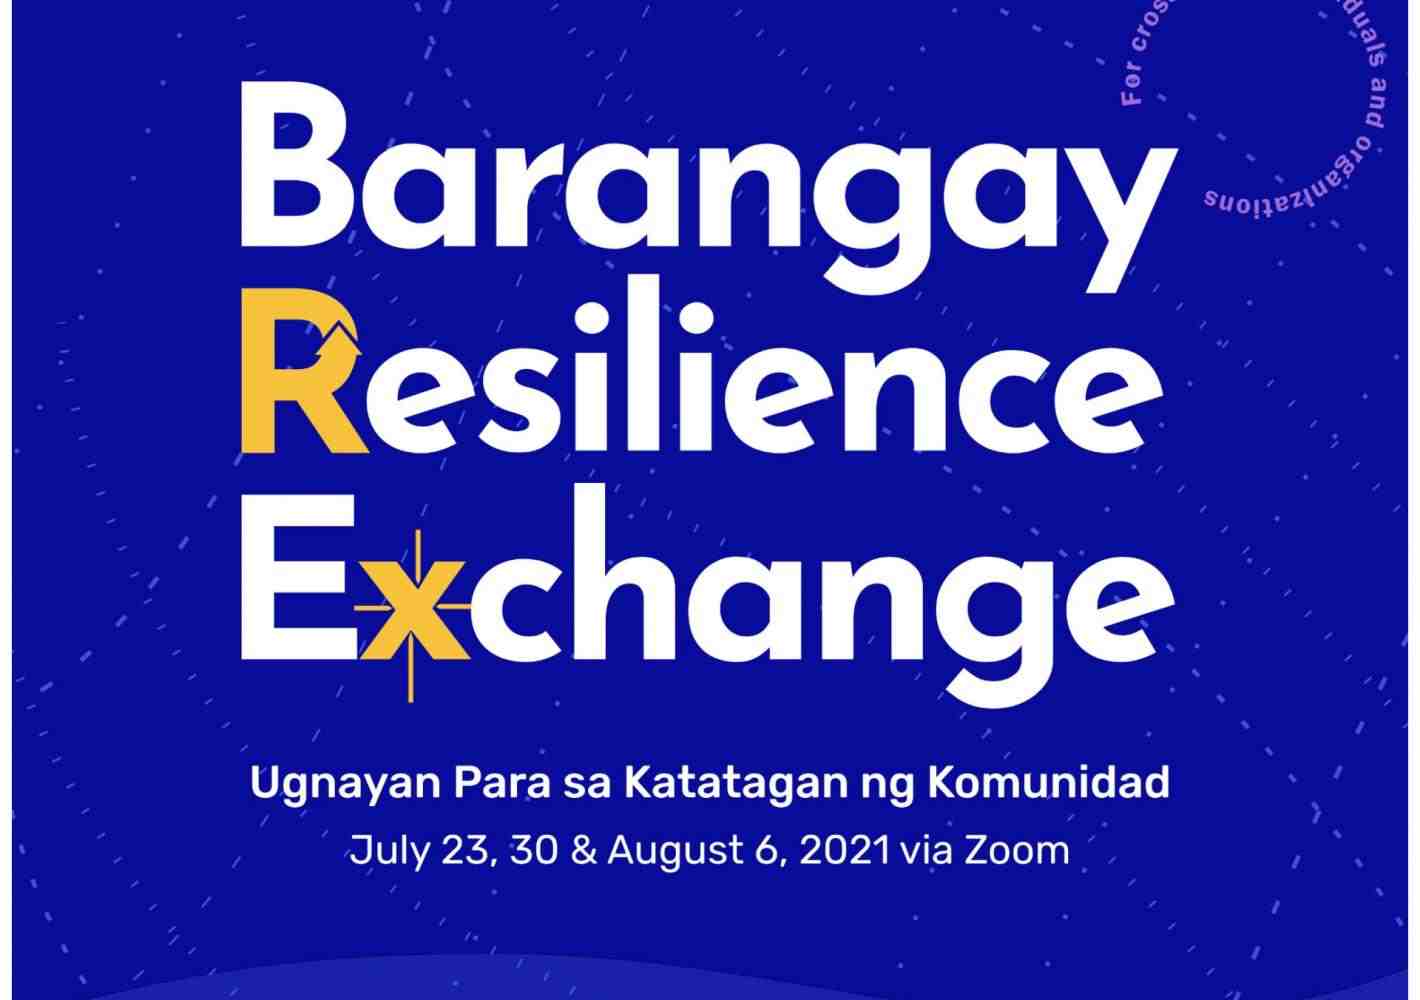 Text: Barangay Resilience Exchange